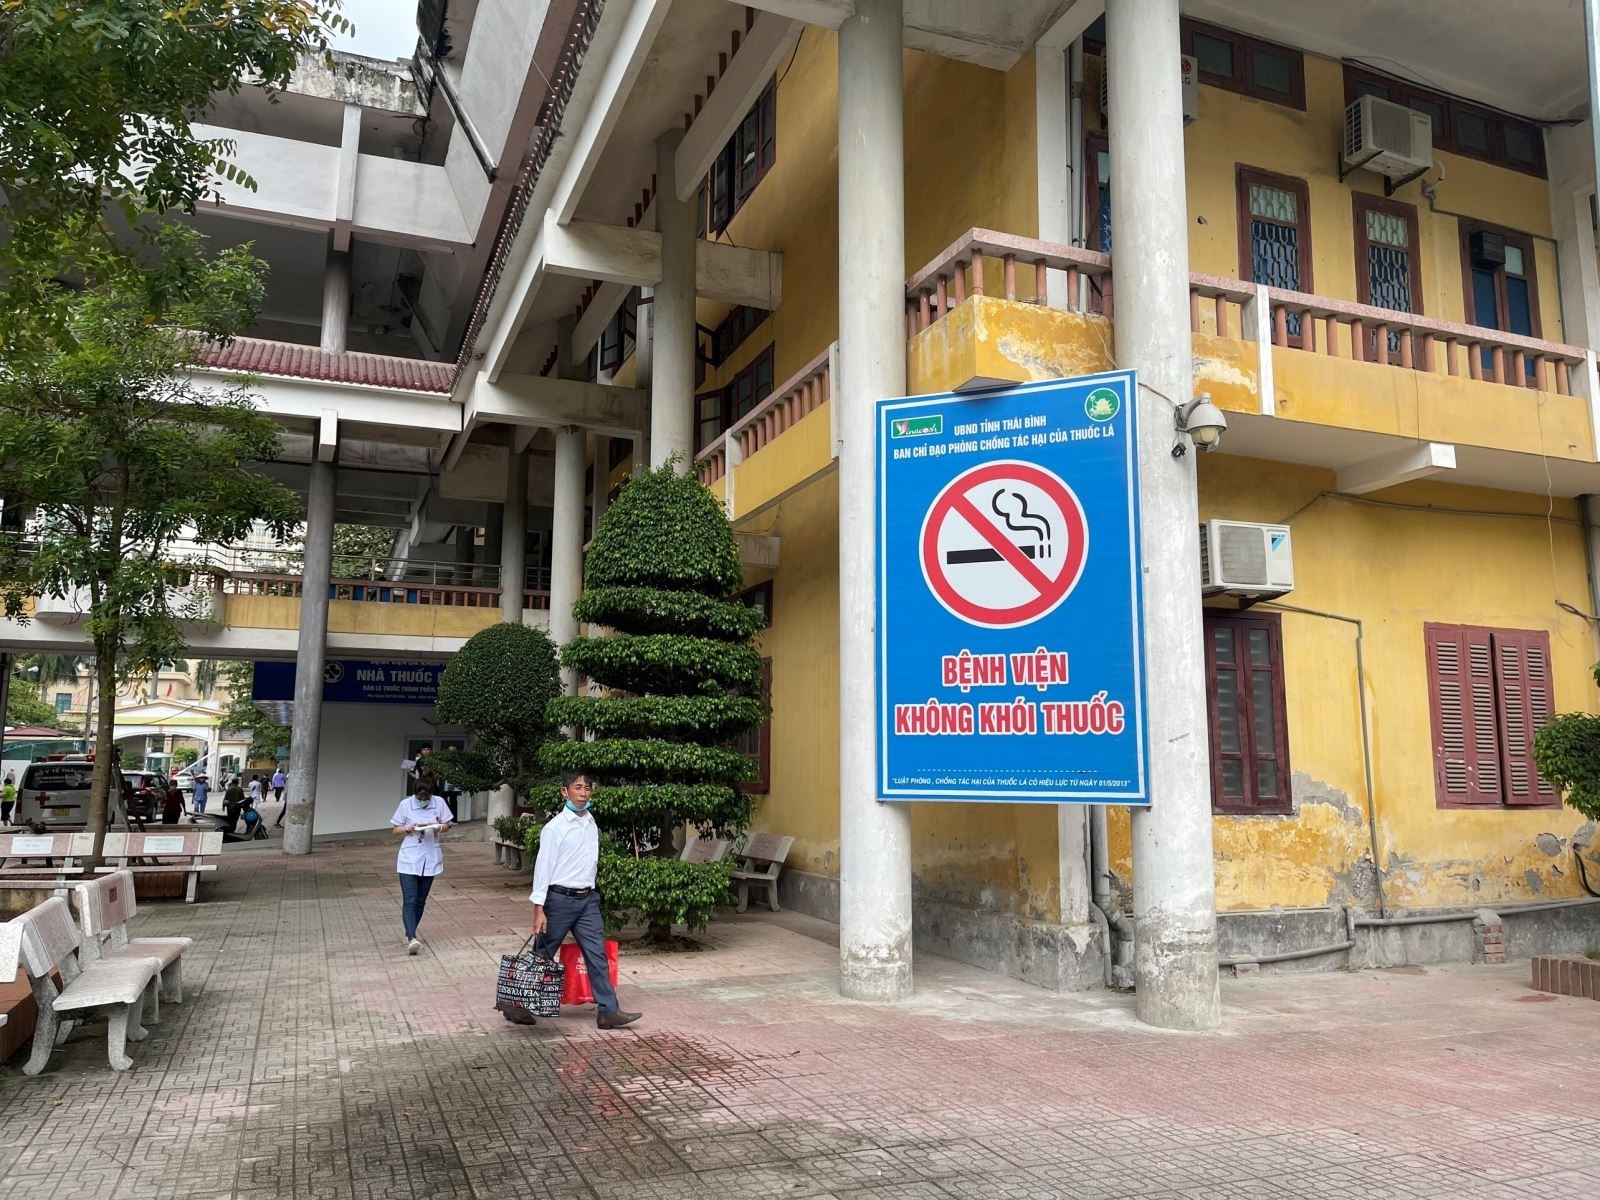 Xây dựng môi trường bệnh viện không khói thuốc tại Bệnh viện Đa khoa tỉnh Thái Bình